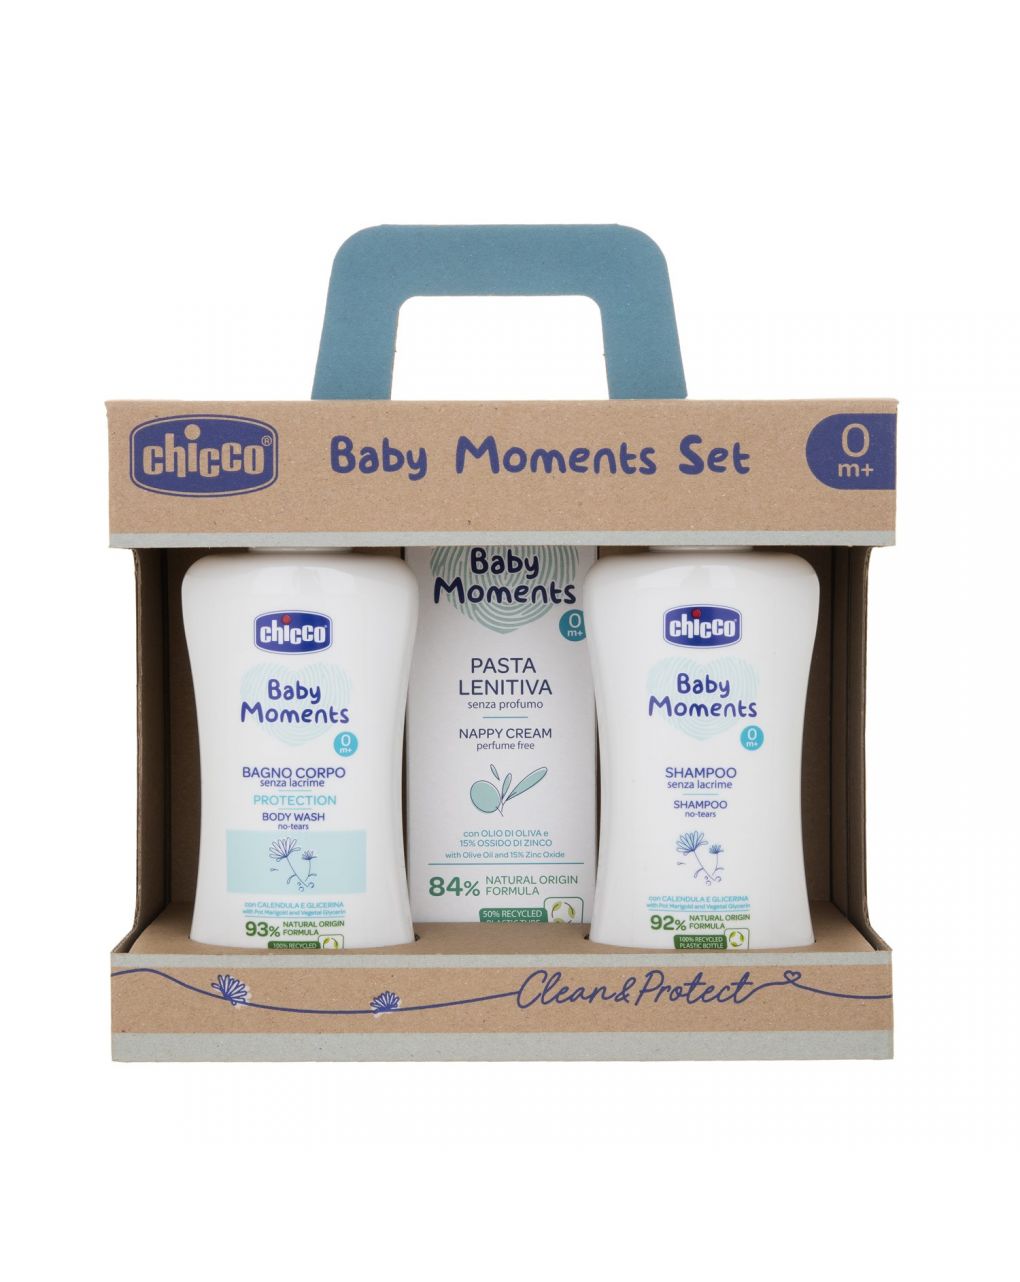 Baby moments set 2 baño corporal, champú, pasta calmante - Chicco